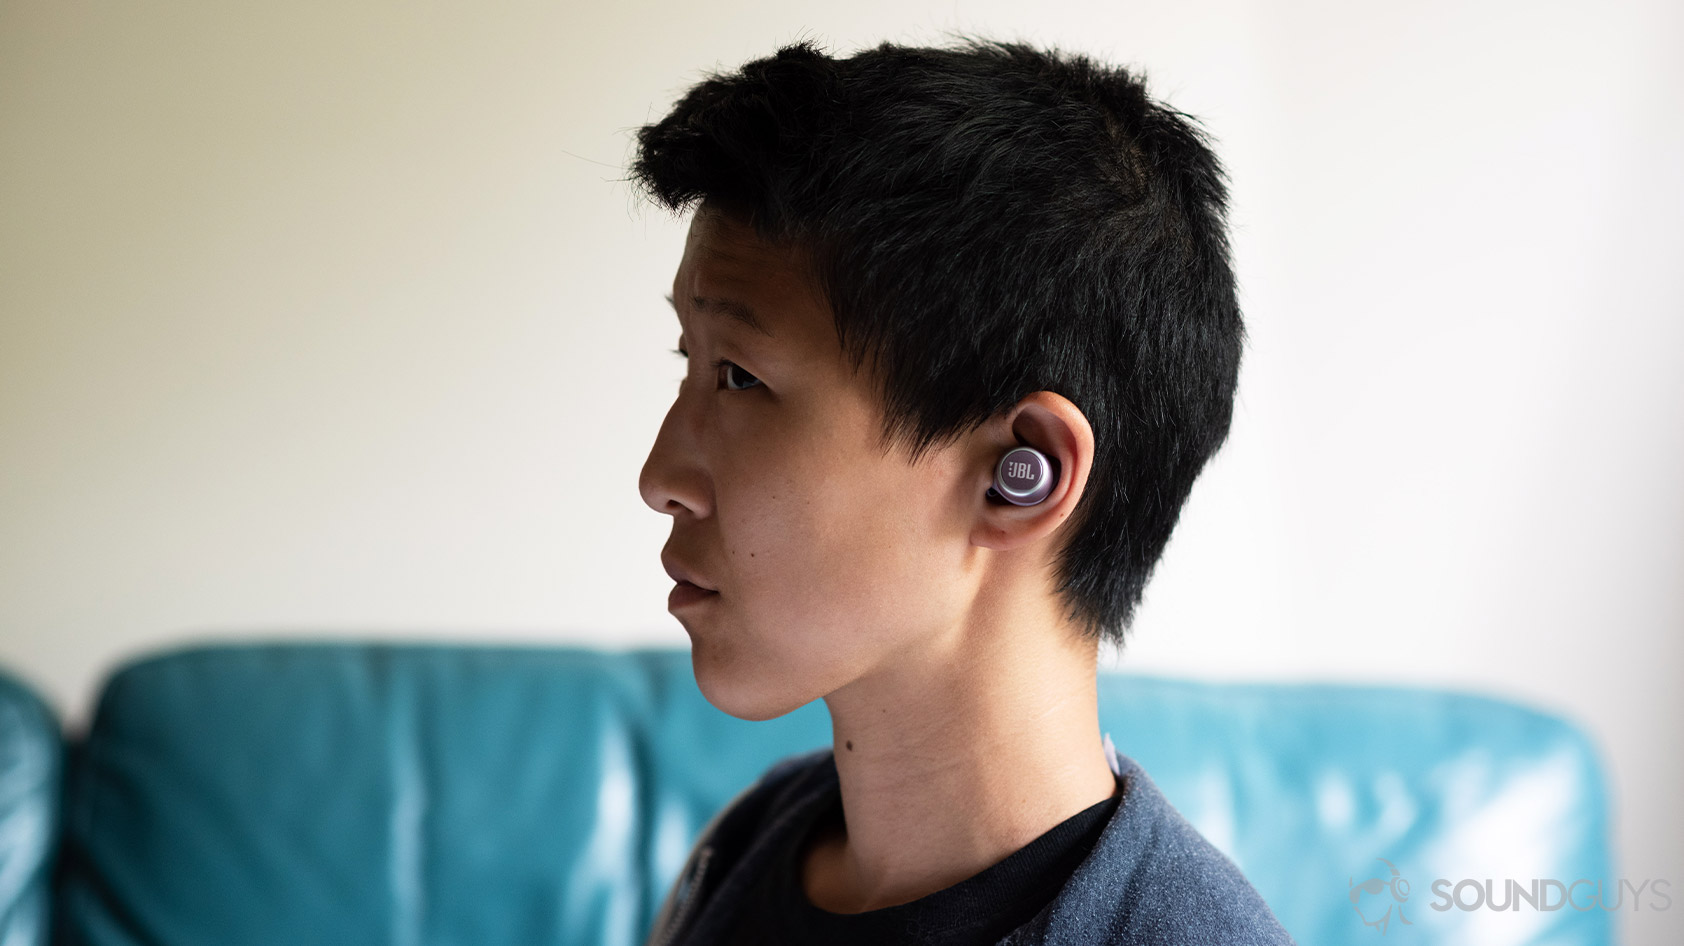 JBL LIVE 300TWS True Wireless In-Ear Headphones - Black PLEIYglWtJ